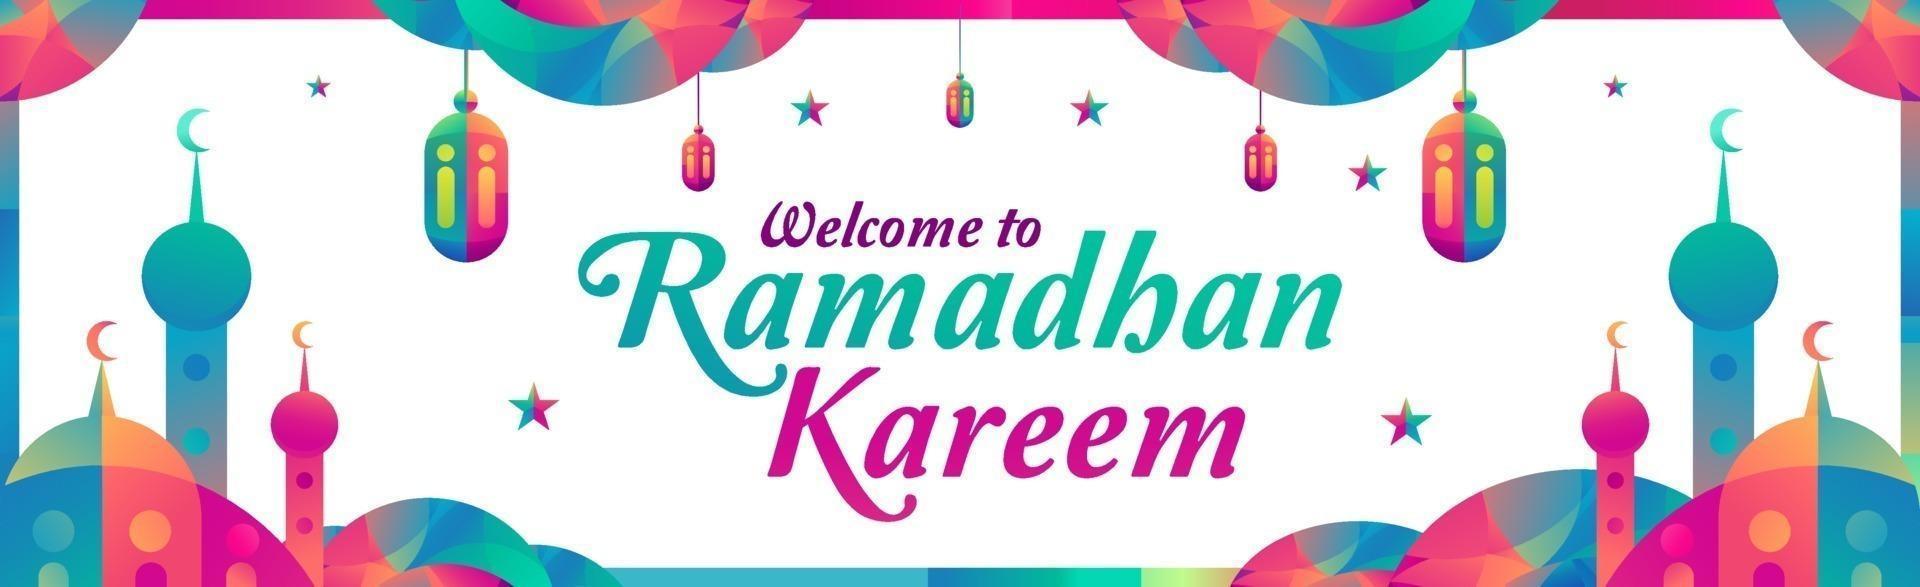 bienvenue fond ramadan kareem avec lanterne faneuse et croissant de lune. vecteur